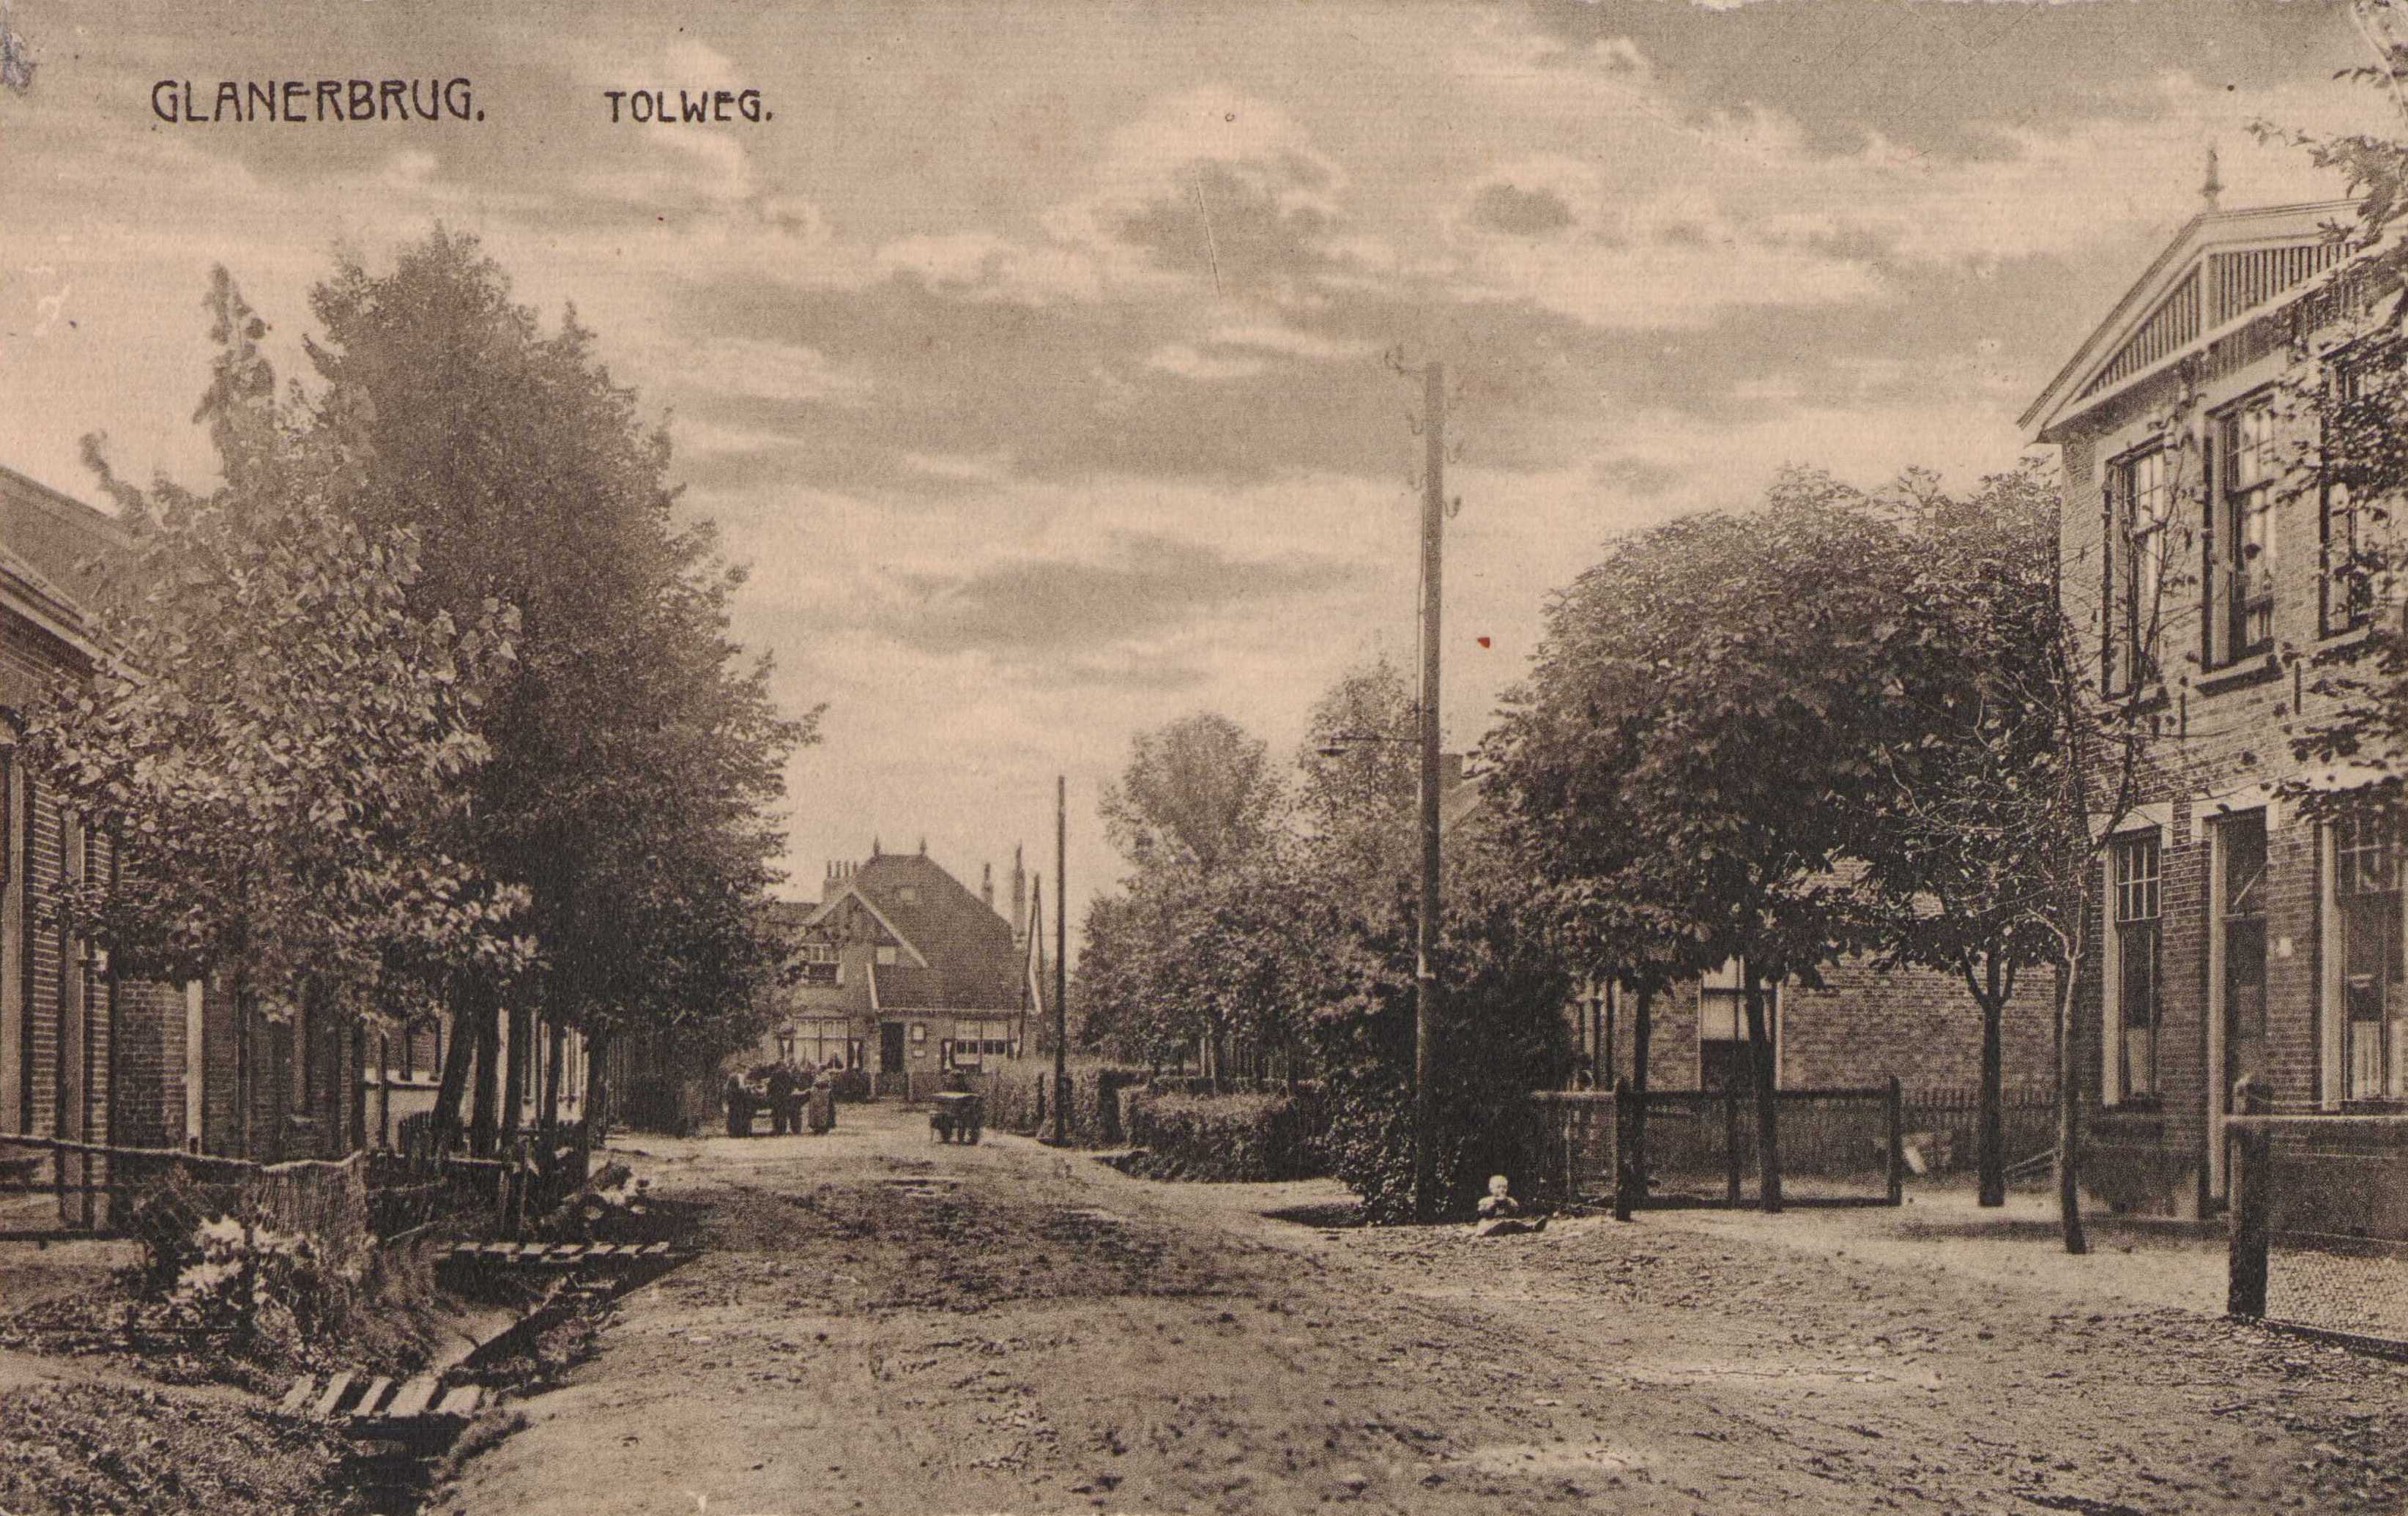 Tolweg-glanerbrug-1926-e9fd1be3.jpg